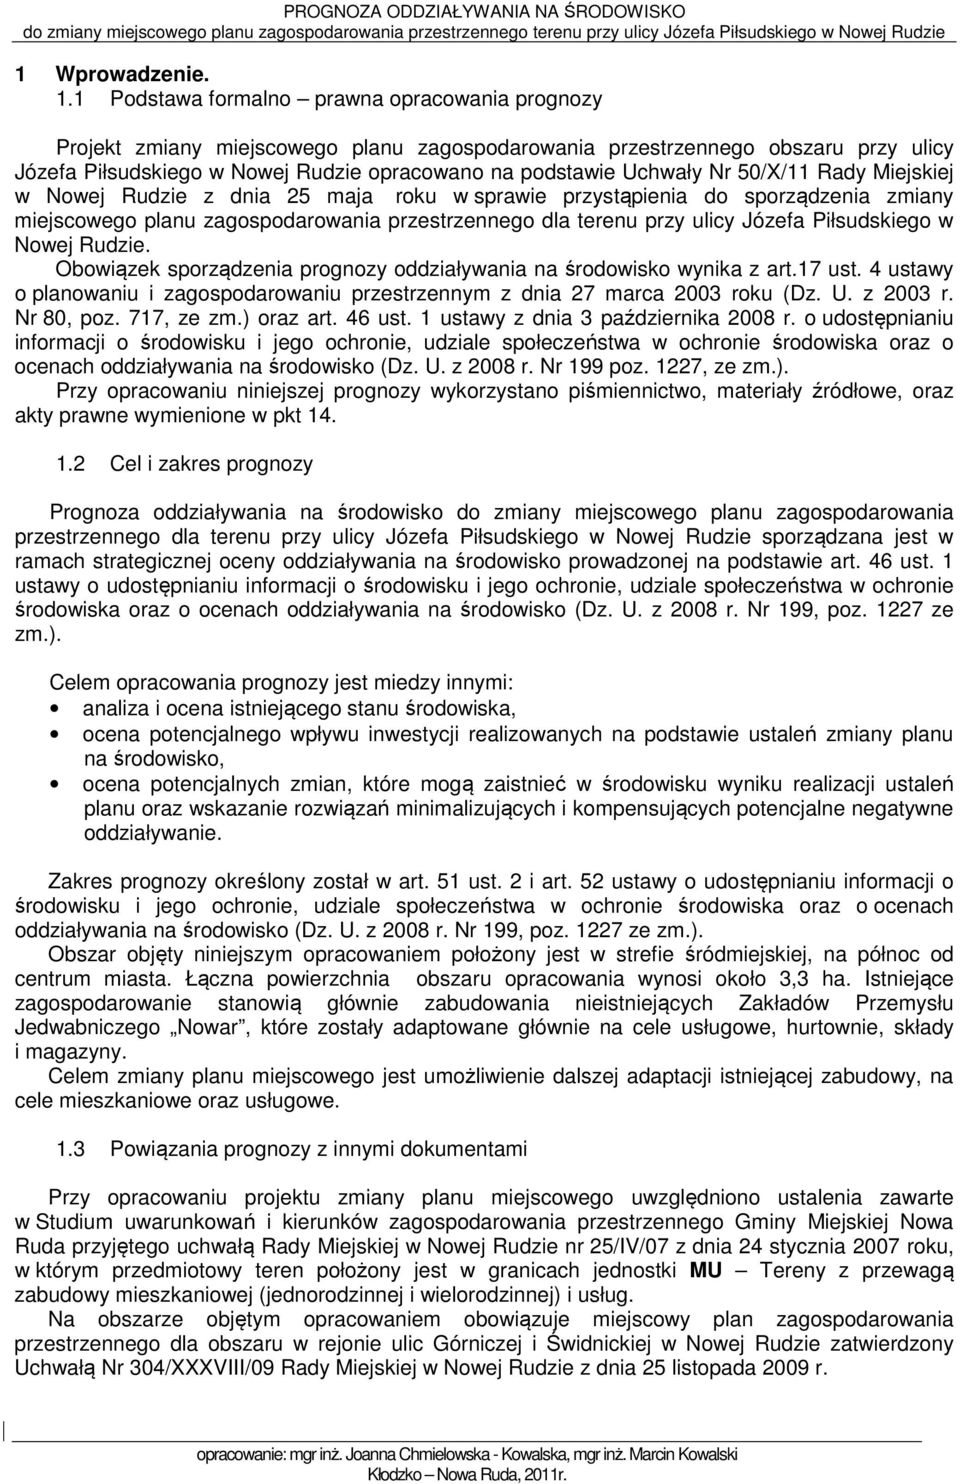 Nr 50/X/11 Rady Miejskiej w Nowej Rudzie z dnia 25 maja roku w sprawie przystąpienia do sporządzenia zmiany miejscowego planu zagospodarowania przestrzennego dla terenu przy ulicy Józefa Piłsudskiego